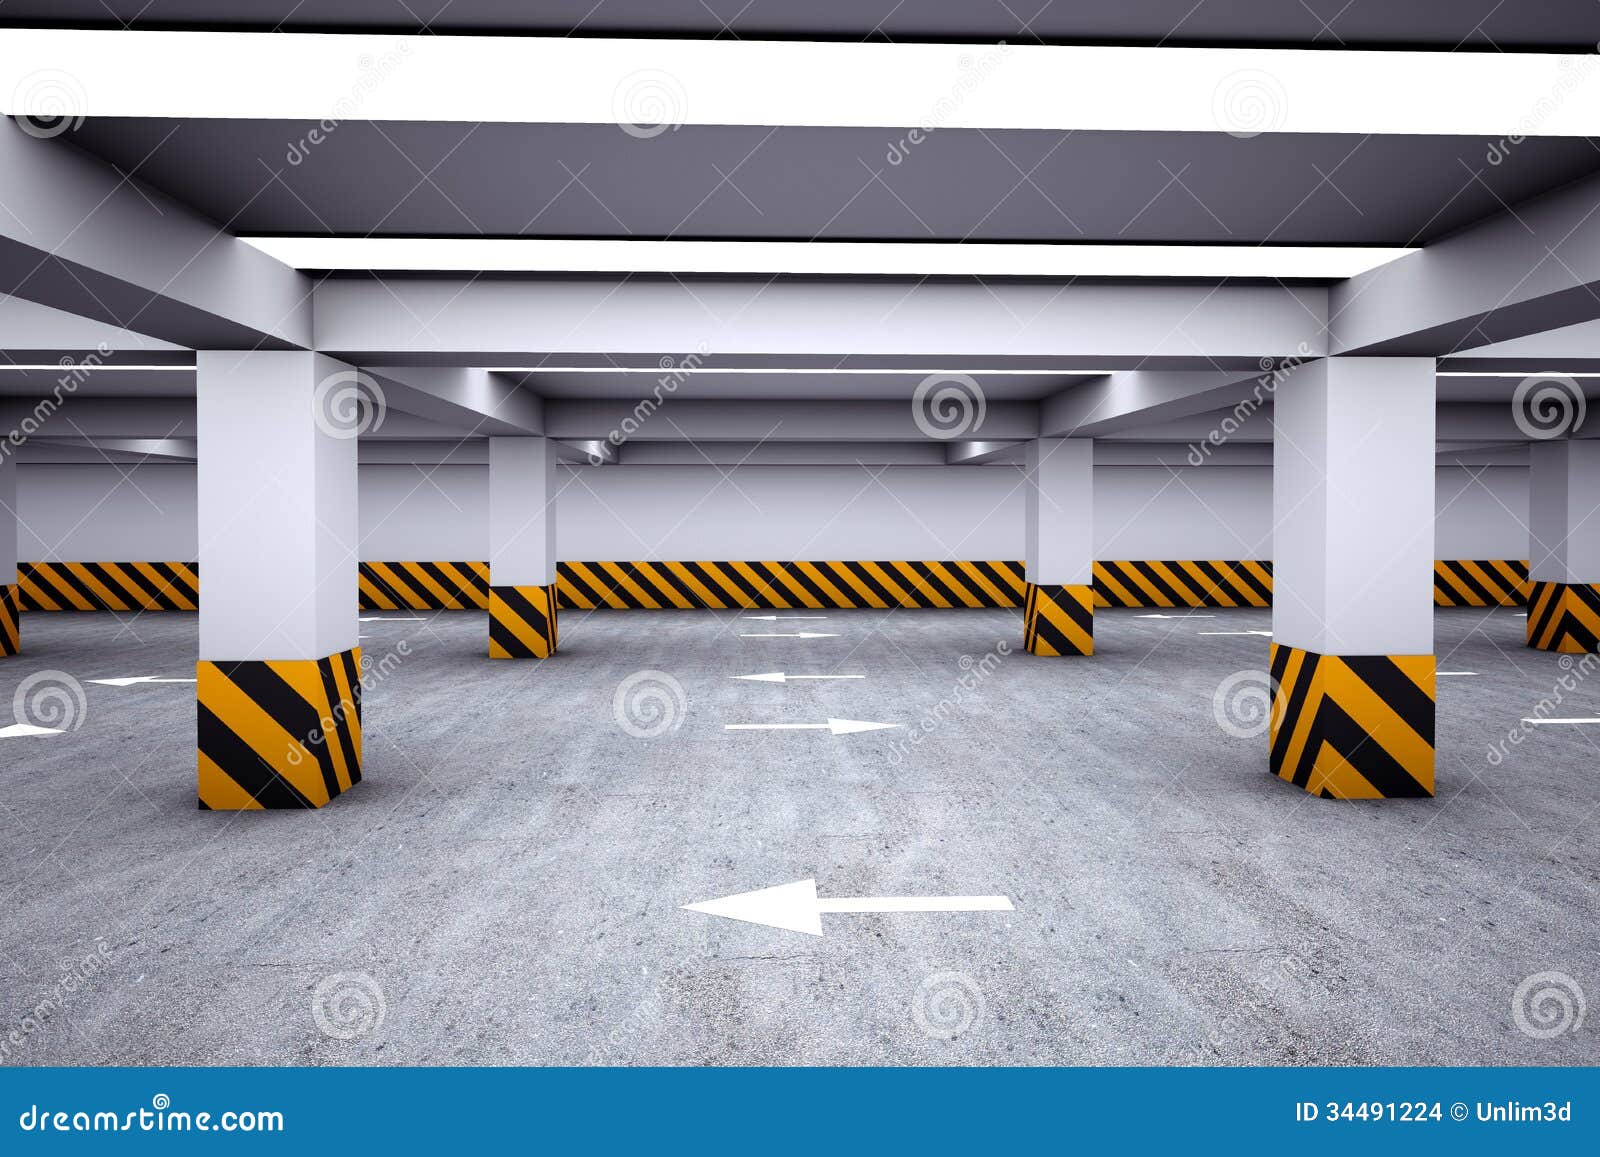 empty underground parking area d render 34491224